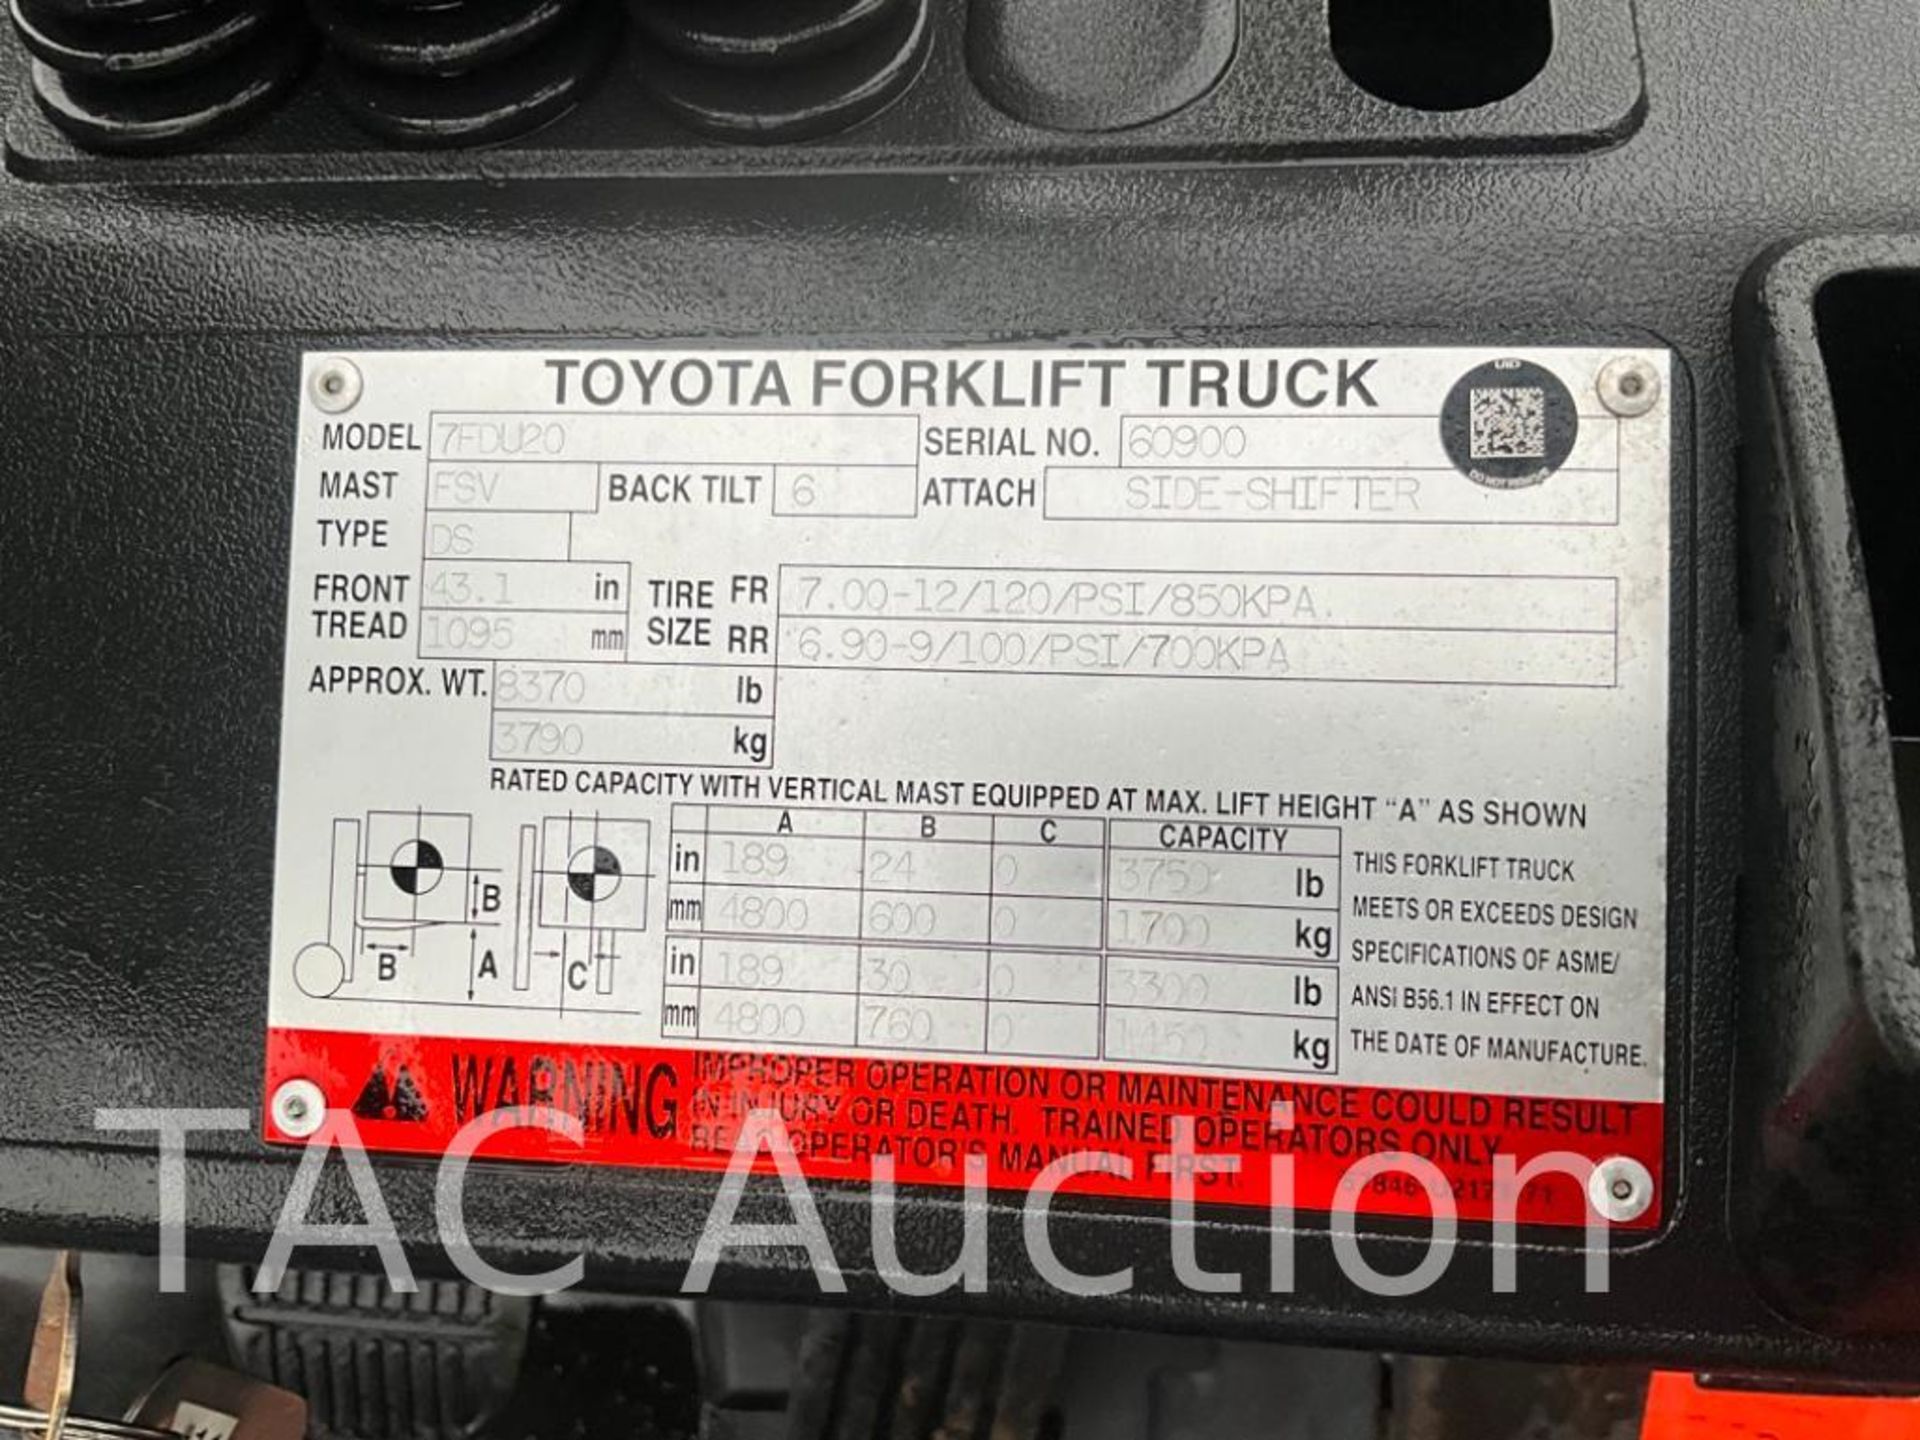 Toyota 7FD420 4000lb Diesel Forklift - Image 35 of 35